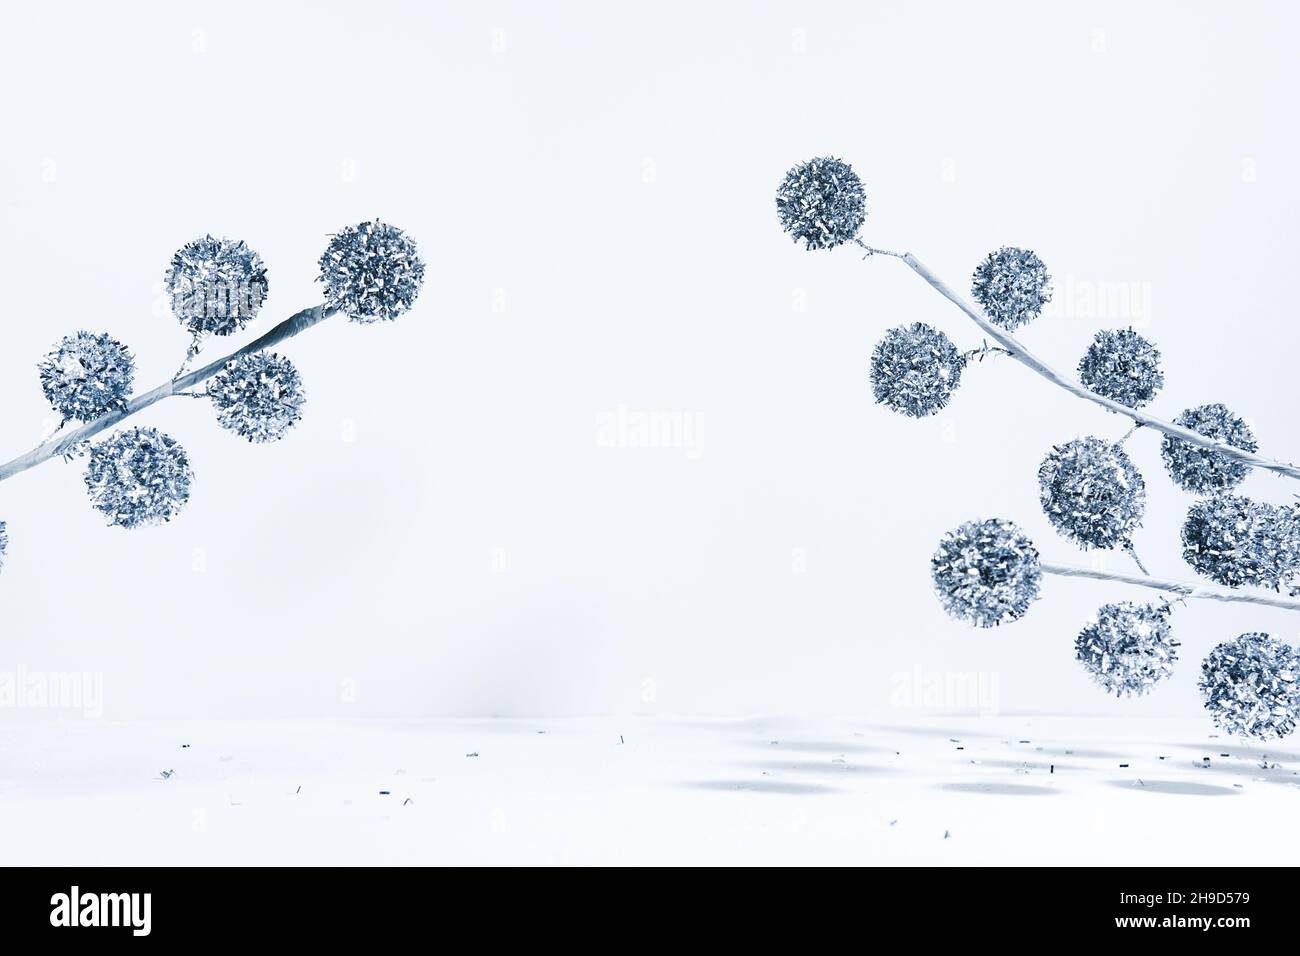 Mise en page créative de décorations géométriques de Noël avec boules arbre de Noël sur un fond blanc dans les rayons du soleil avec des ombres.Un hiver minimal Banque D'Images